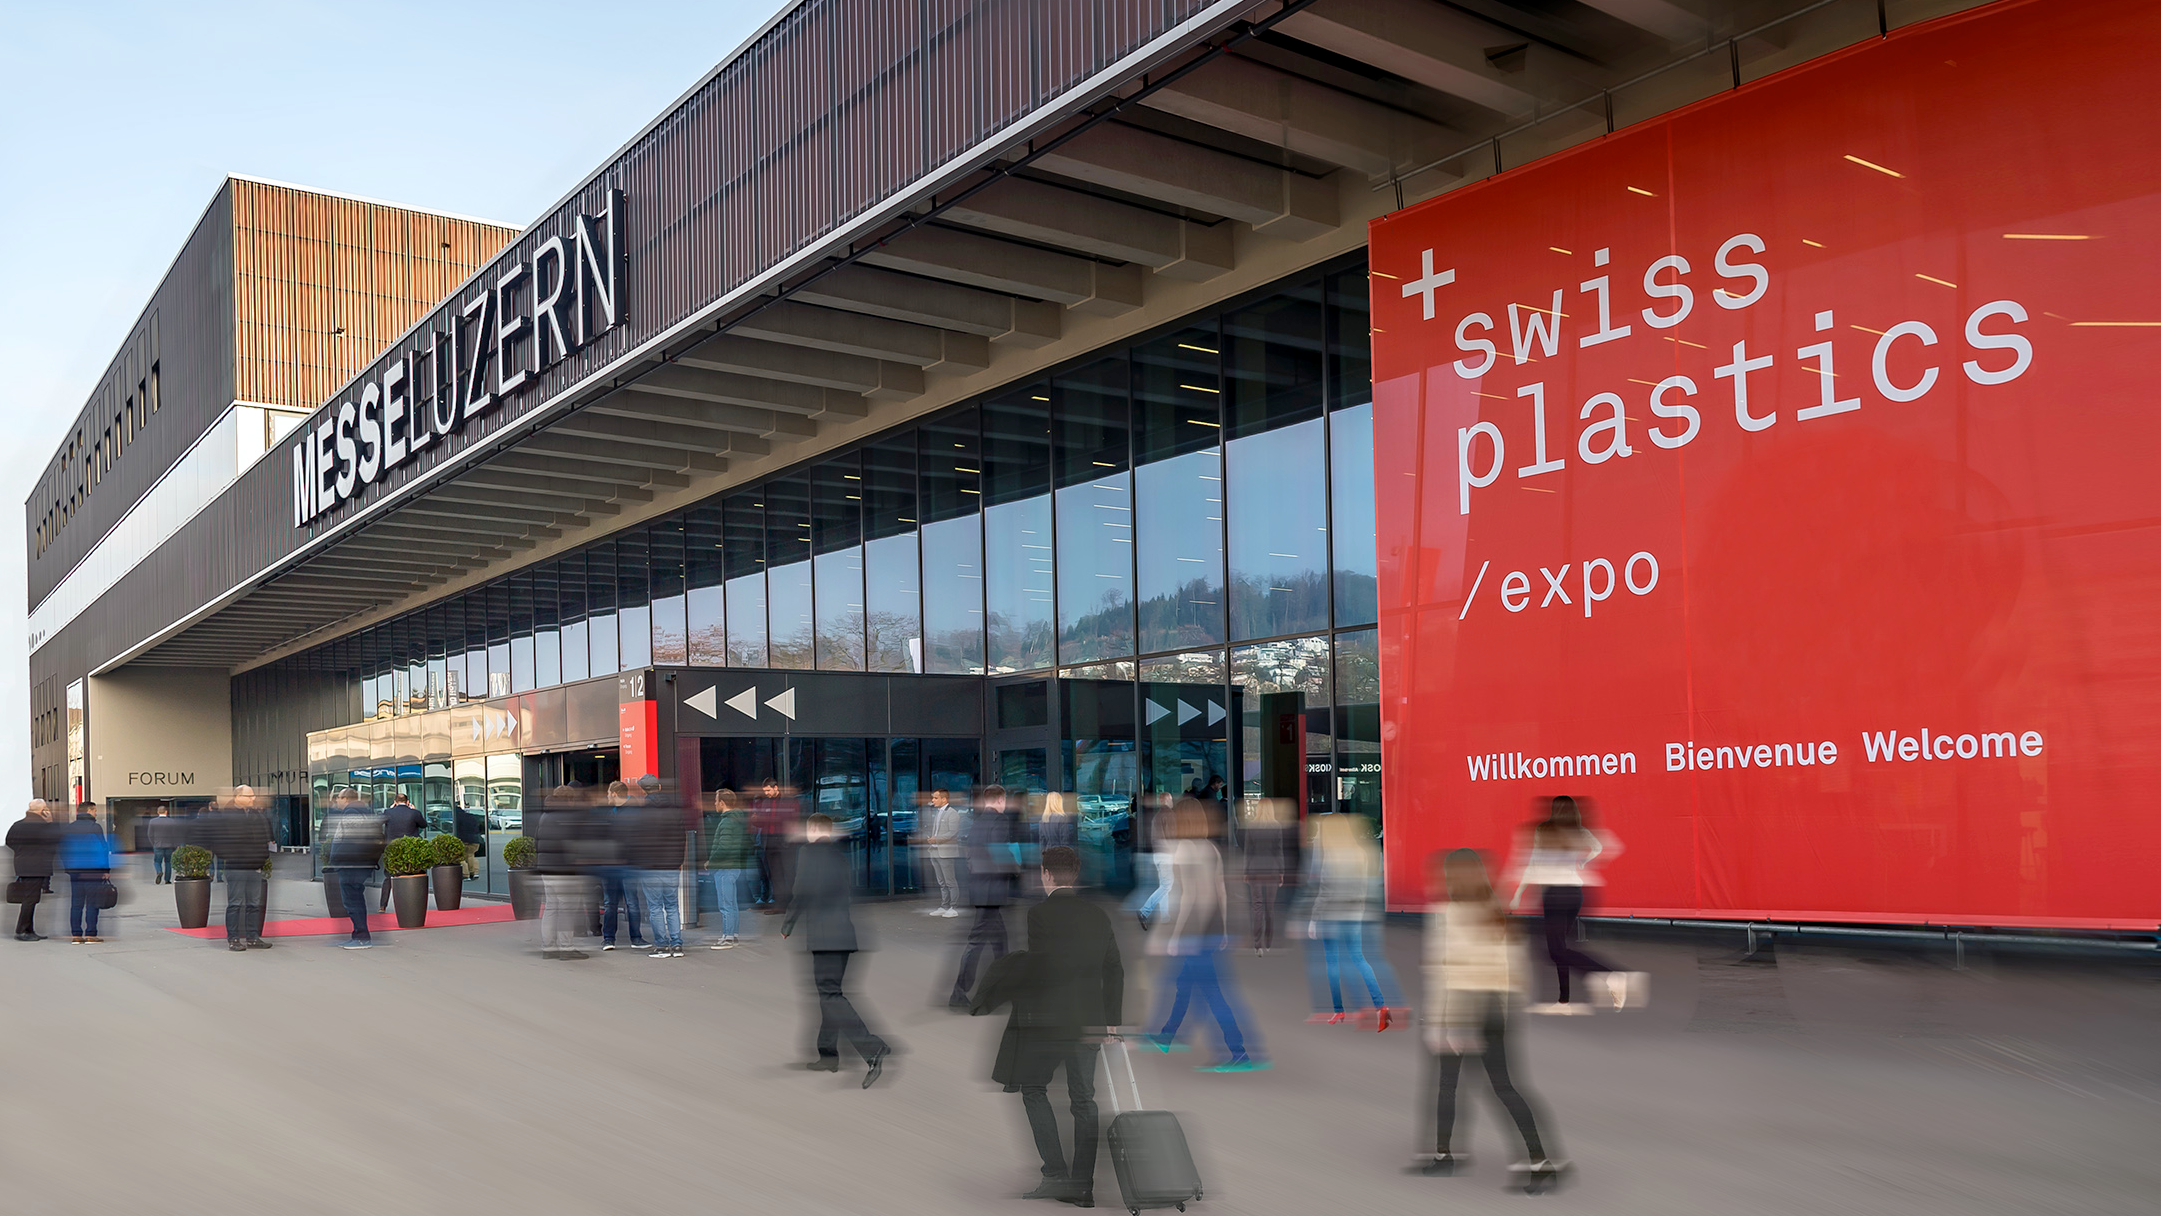 (c) Swissplastics-expo.ch